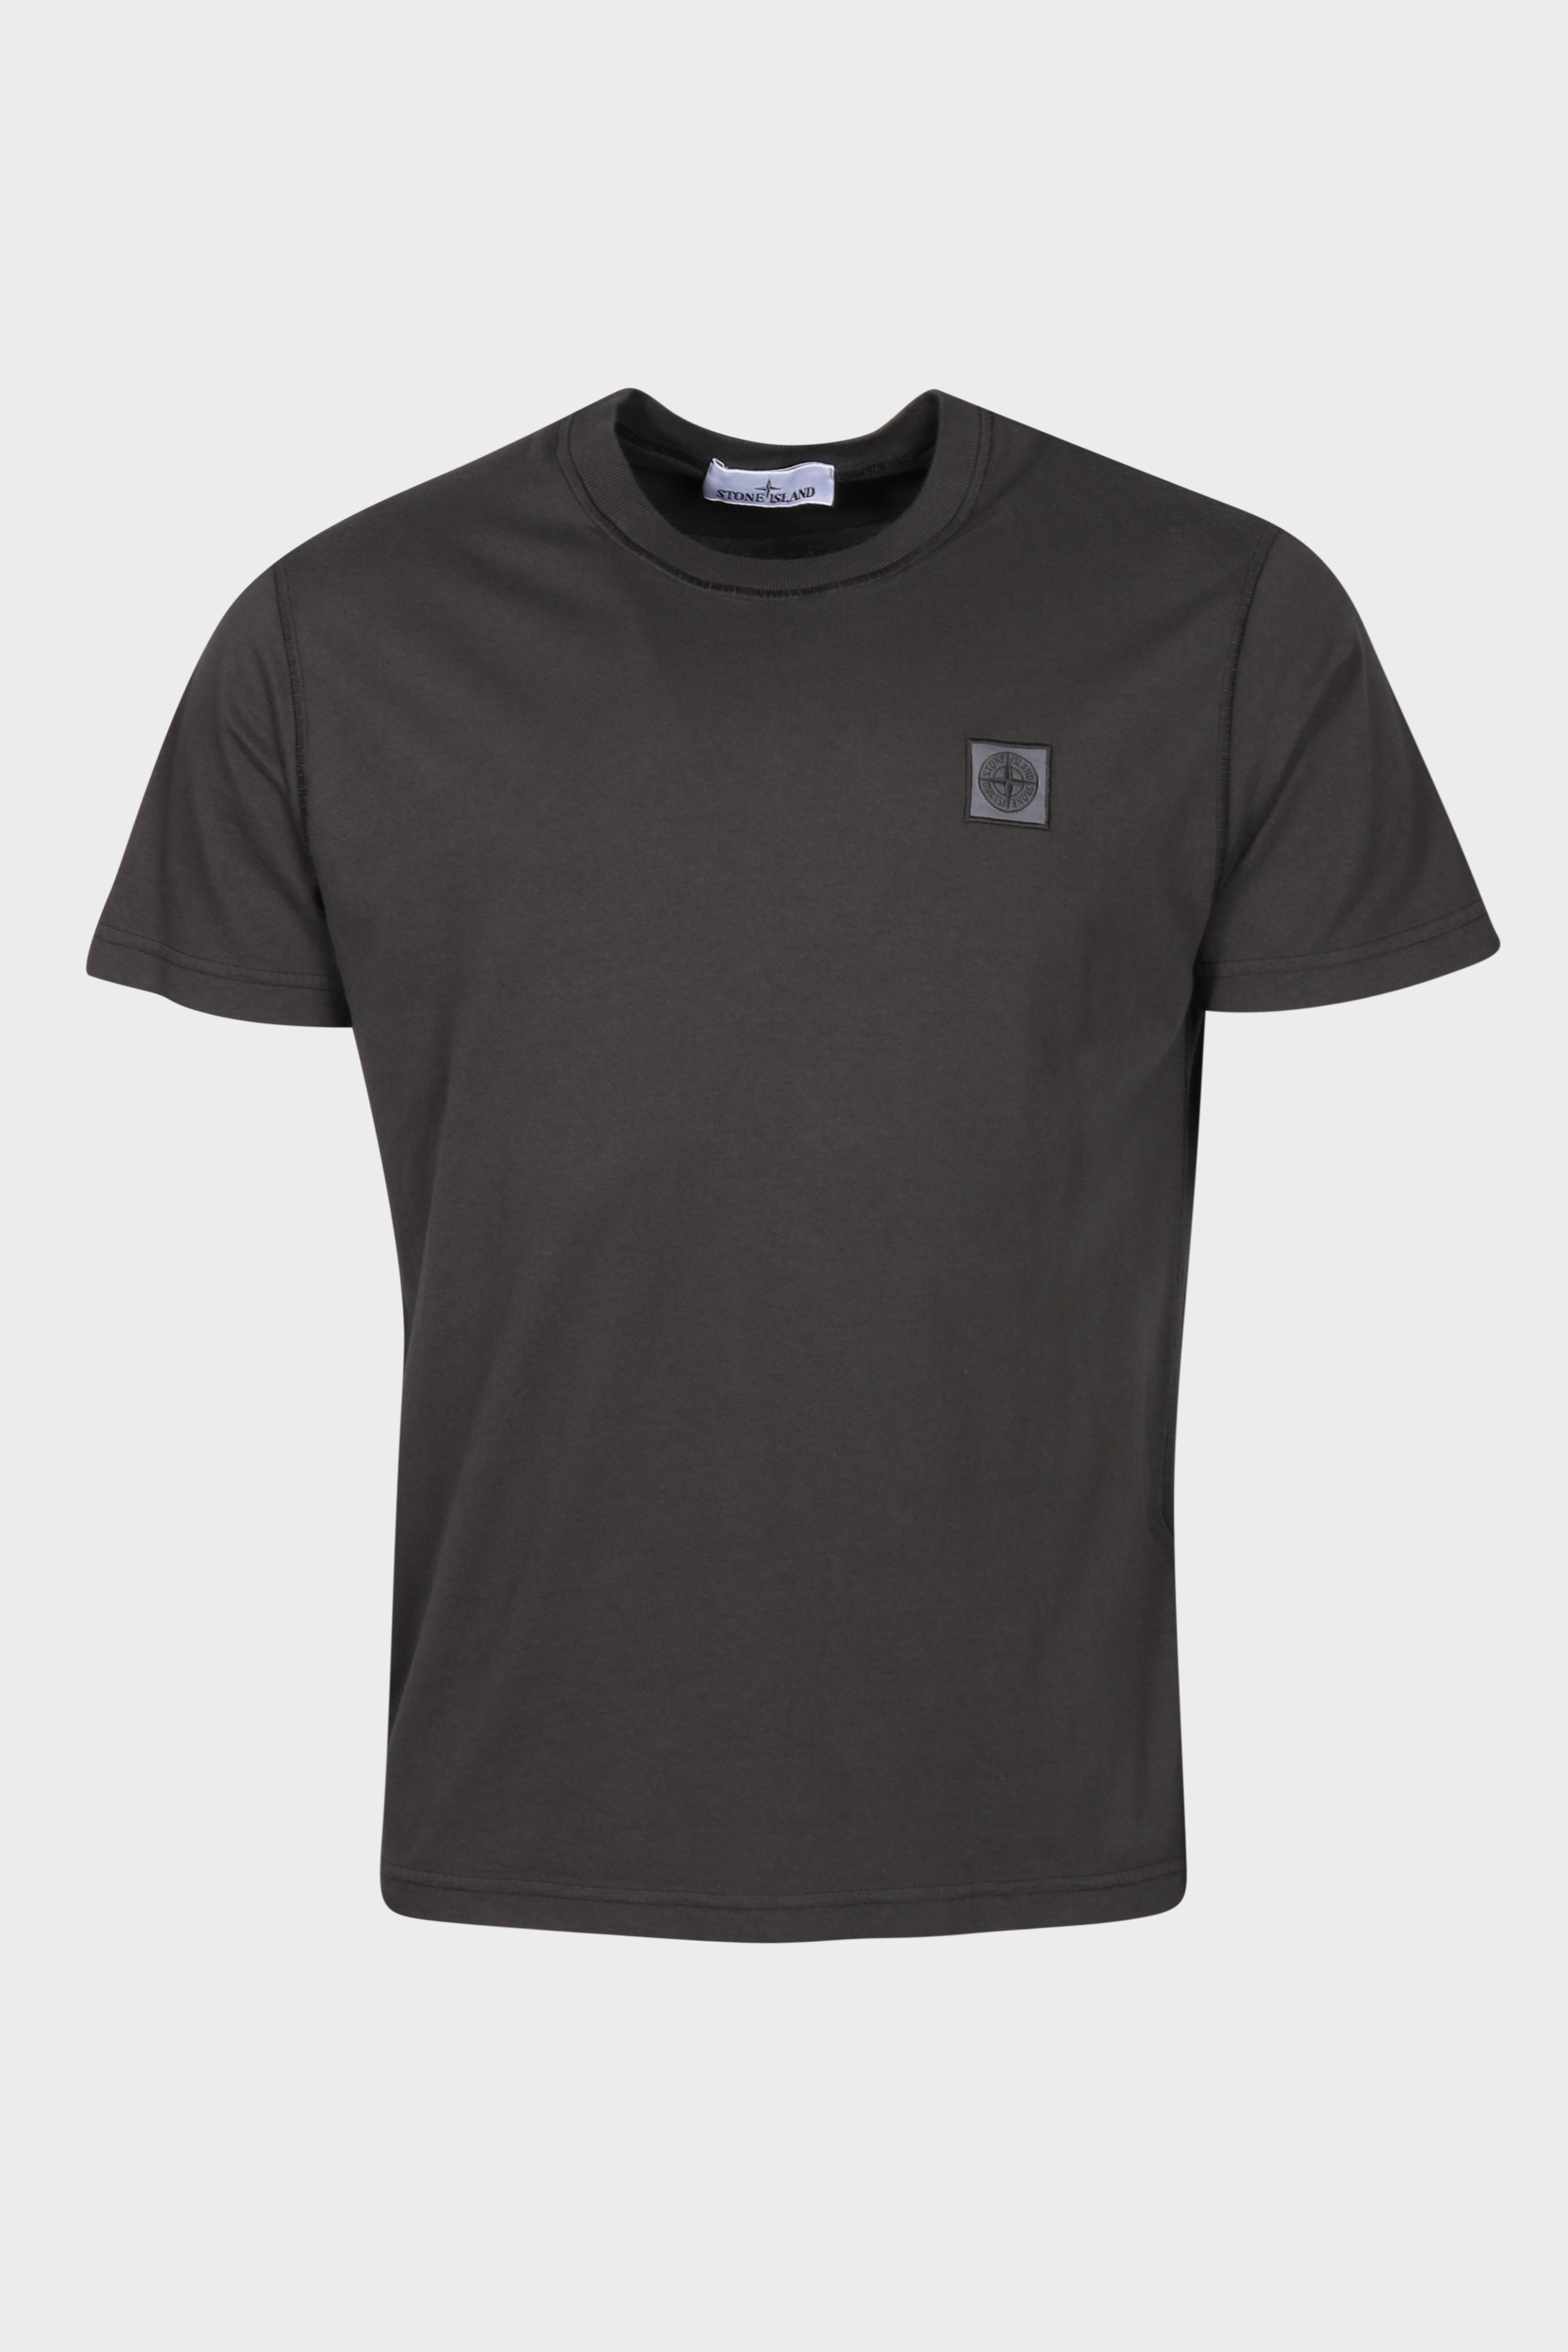 STONE ISLAND T-Shirt in Dark Grey 2XL